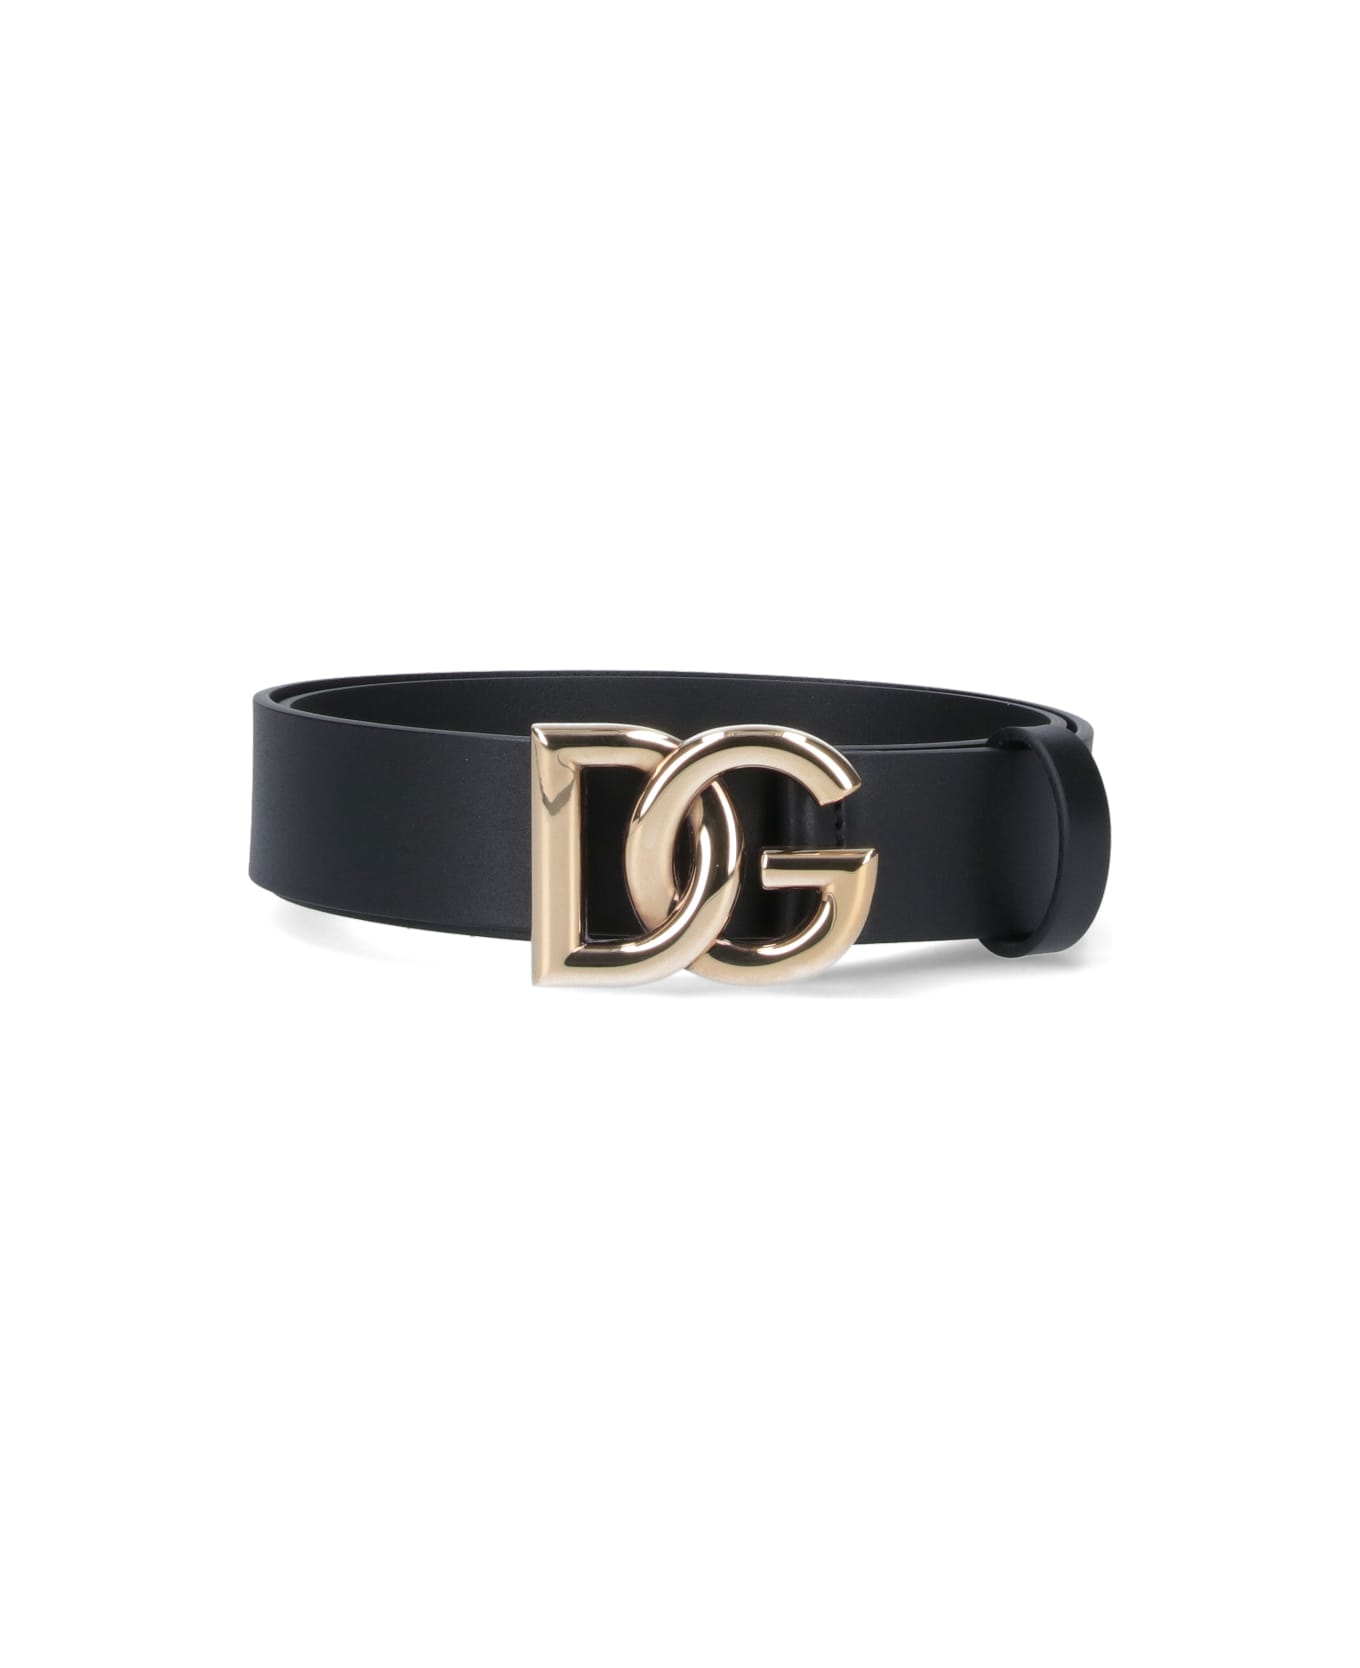 Dolce & Gabbana 'dg' Buckle Belt - Nero oro